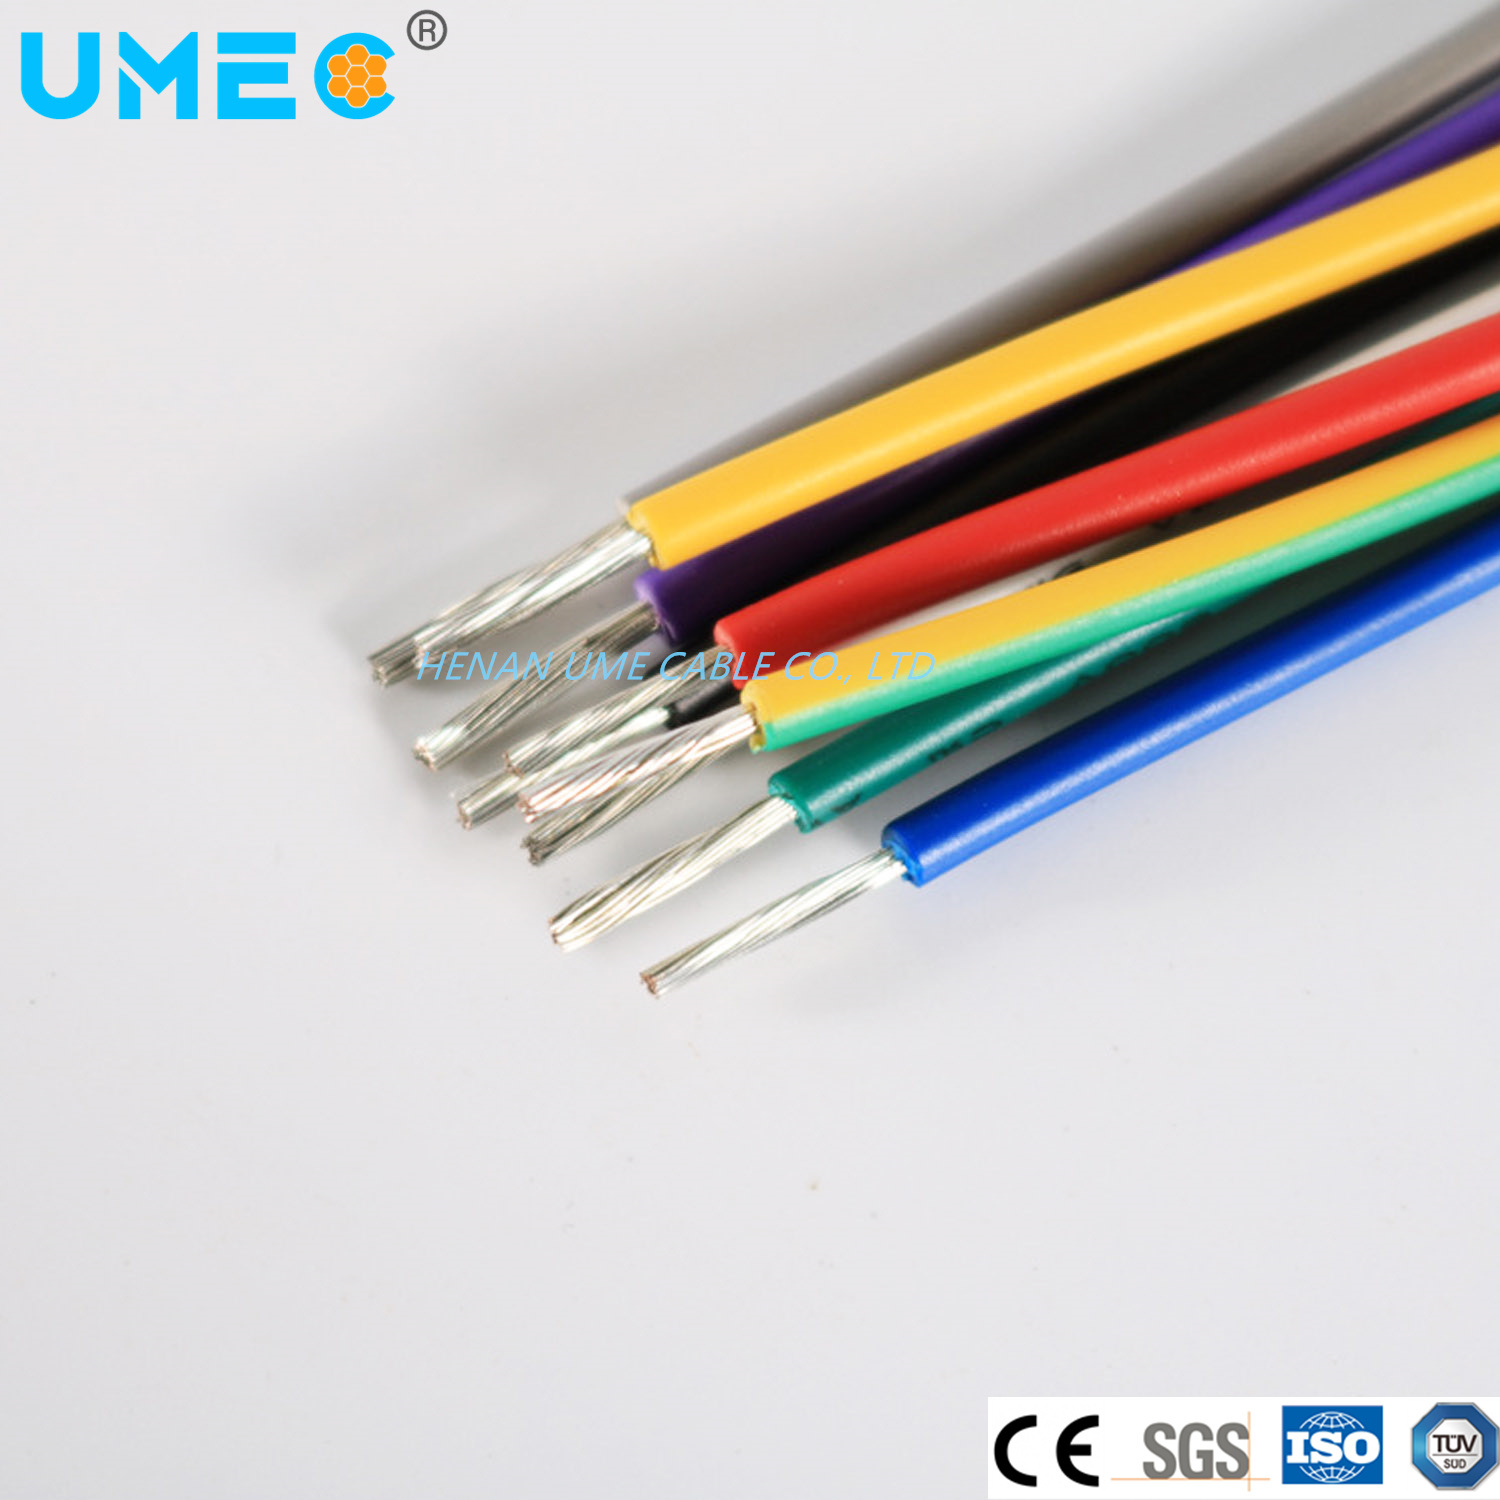 
                Мягкая теплостойкость из меди, электрика, силикон, стекловолокно, проволока 0.3 0.5 0.75 1.0 1.5 2.0 2,5 мм2 для провода кабеля для нагревательных элементов
            